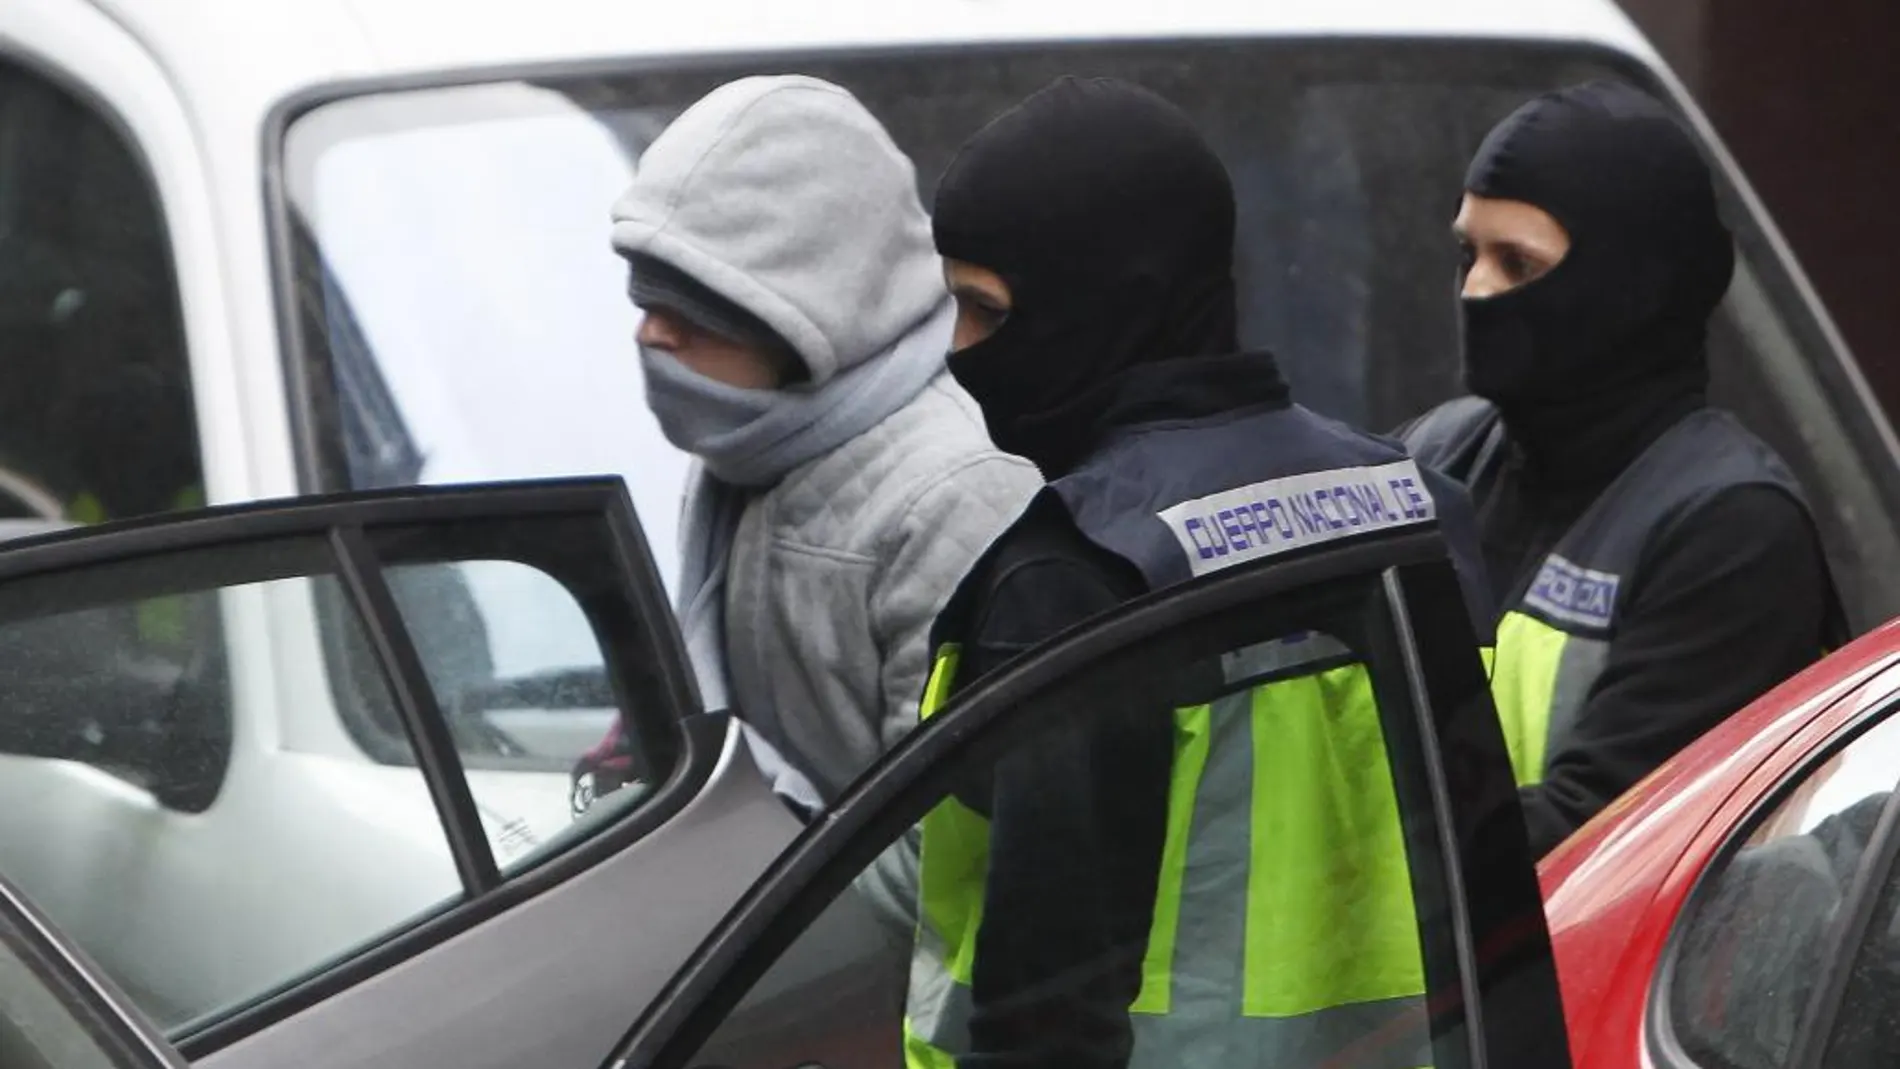 Uno de los supuestos yihadistas fue detenido el pasado día 2 en Mataró